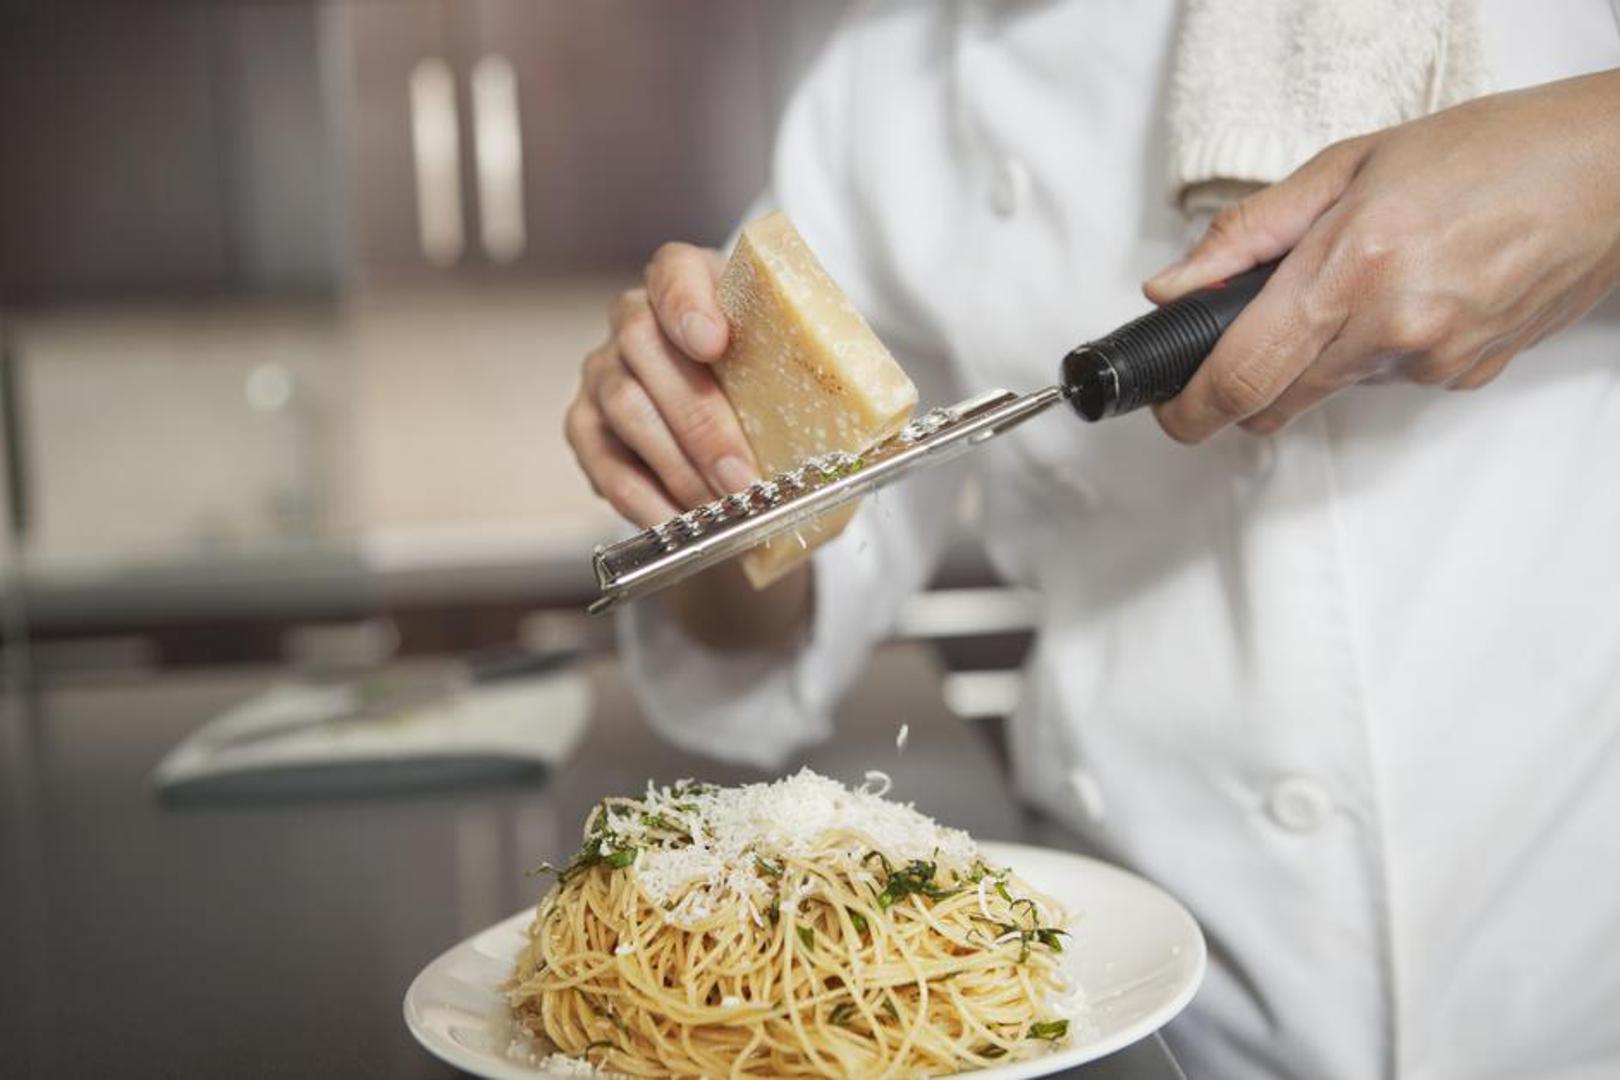 Peti mit: Voda od tjestenine može se iskoristiti za umak - Pogrešno. Osim ako vaš umak nije pregust, dodavanje vode nije poželjno

